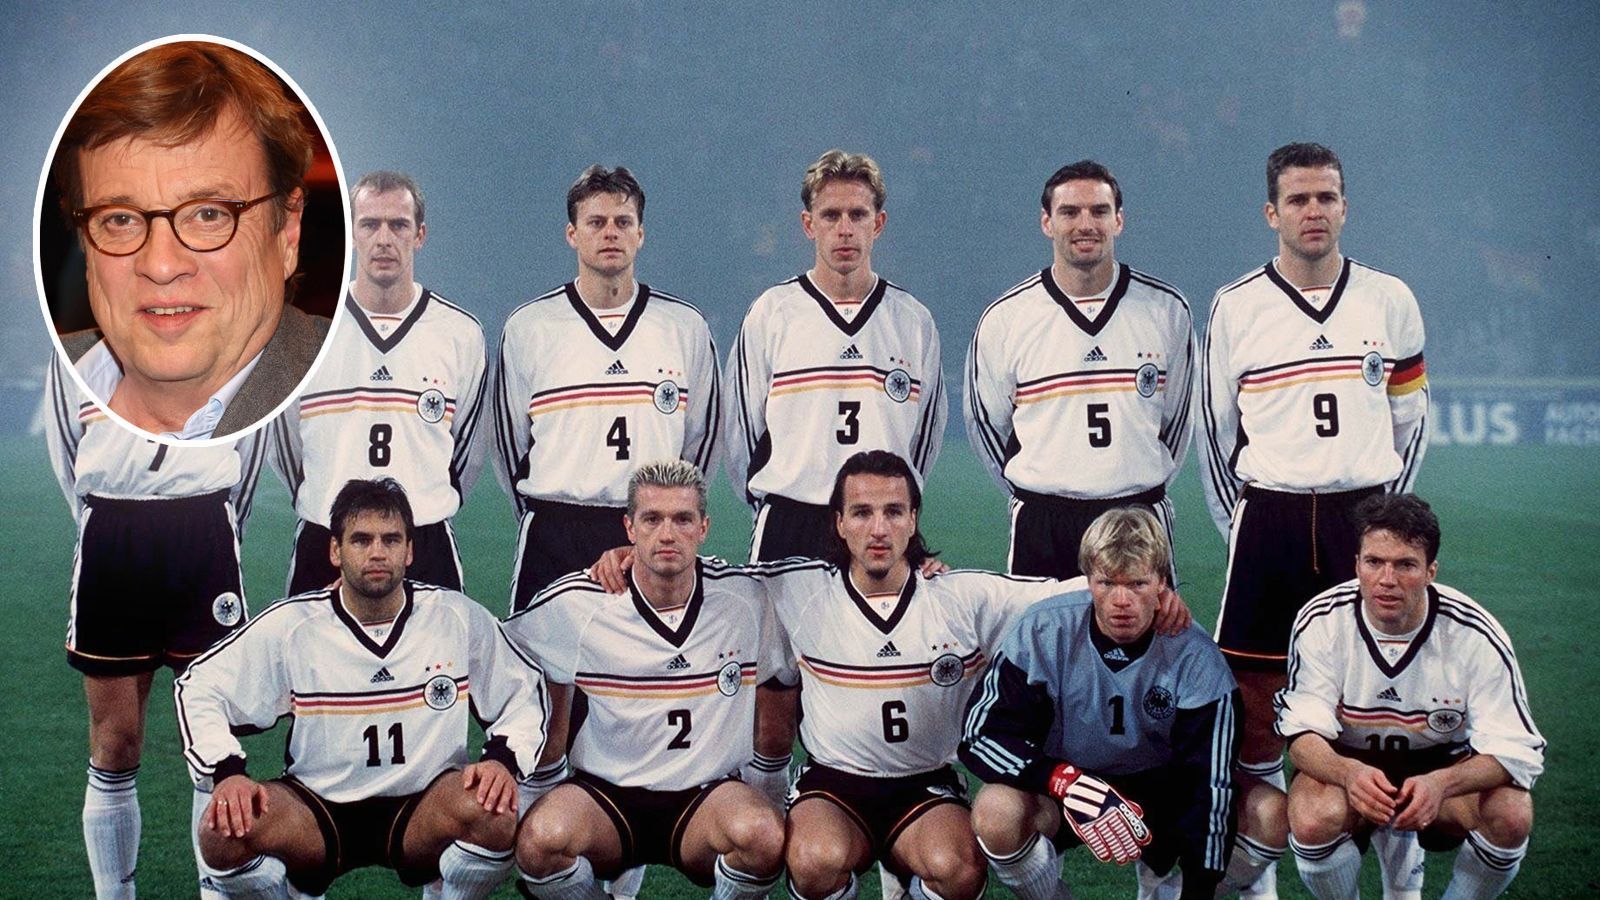 
                <strong>Bela Rethys beste Sprüche</strong><br>
                "Nowotny - für mich einer von Vieren, die gesetzt sind. Außer ihm noch Kahn, Bierhoff, Kirsten und Matthäus." - Rethy über den Stand von Ex-Nationalspieler Jens Nowotny in der deutschen Nationalmannschaft von 1998. 
              